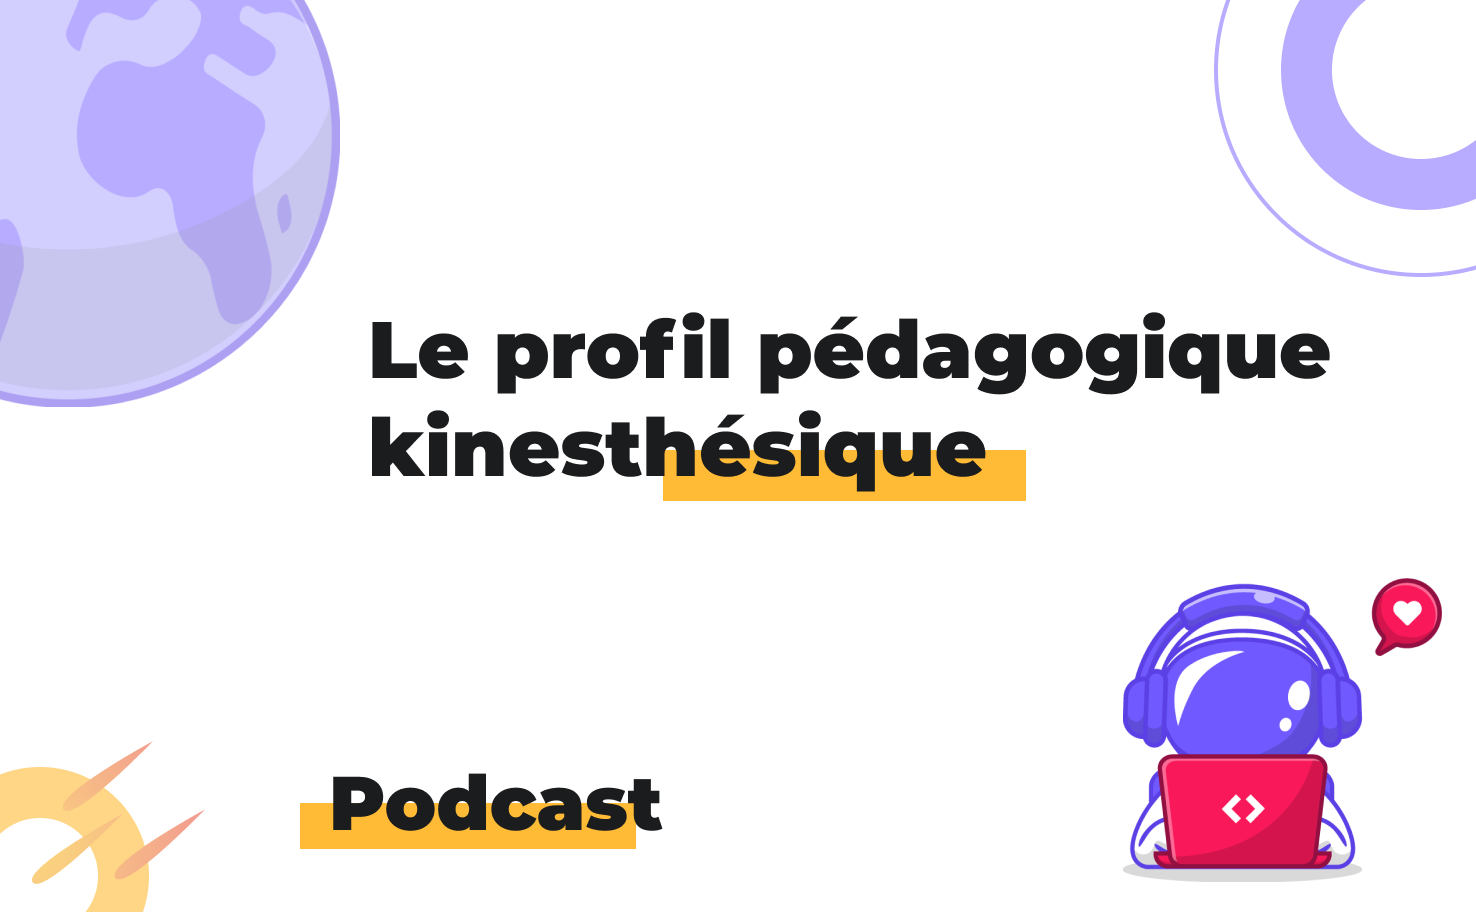 L'image affiche le sujet du podcast: Le profil pédagogique kinésthésique